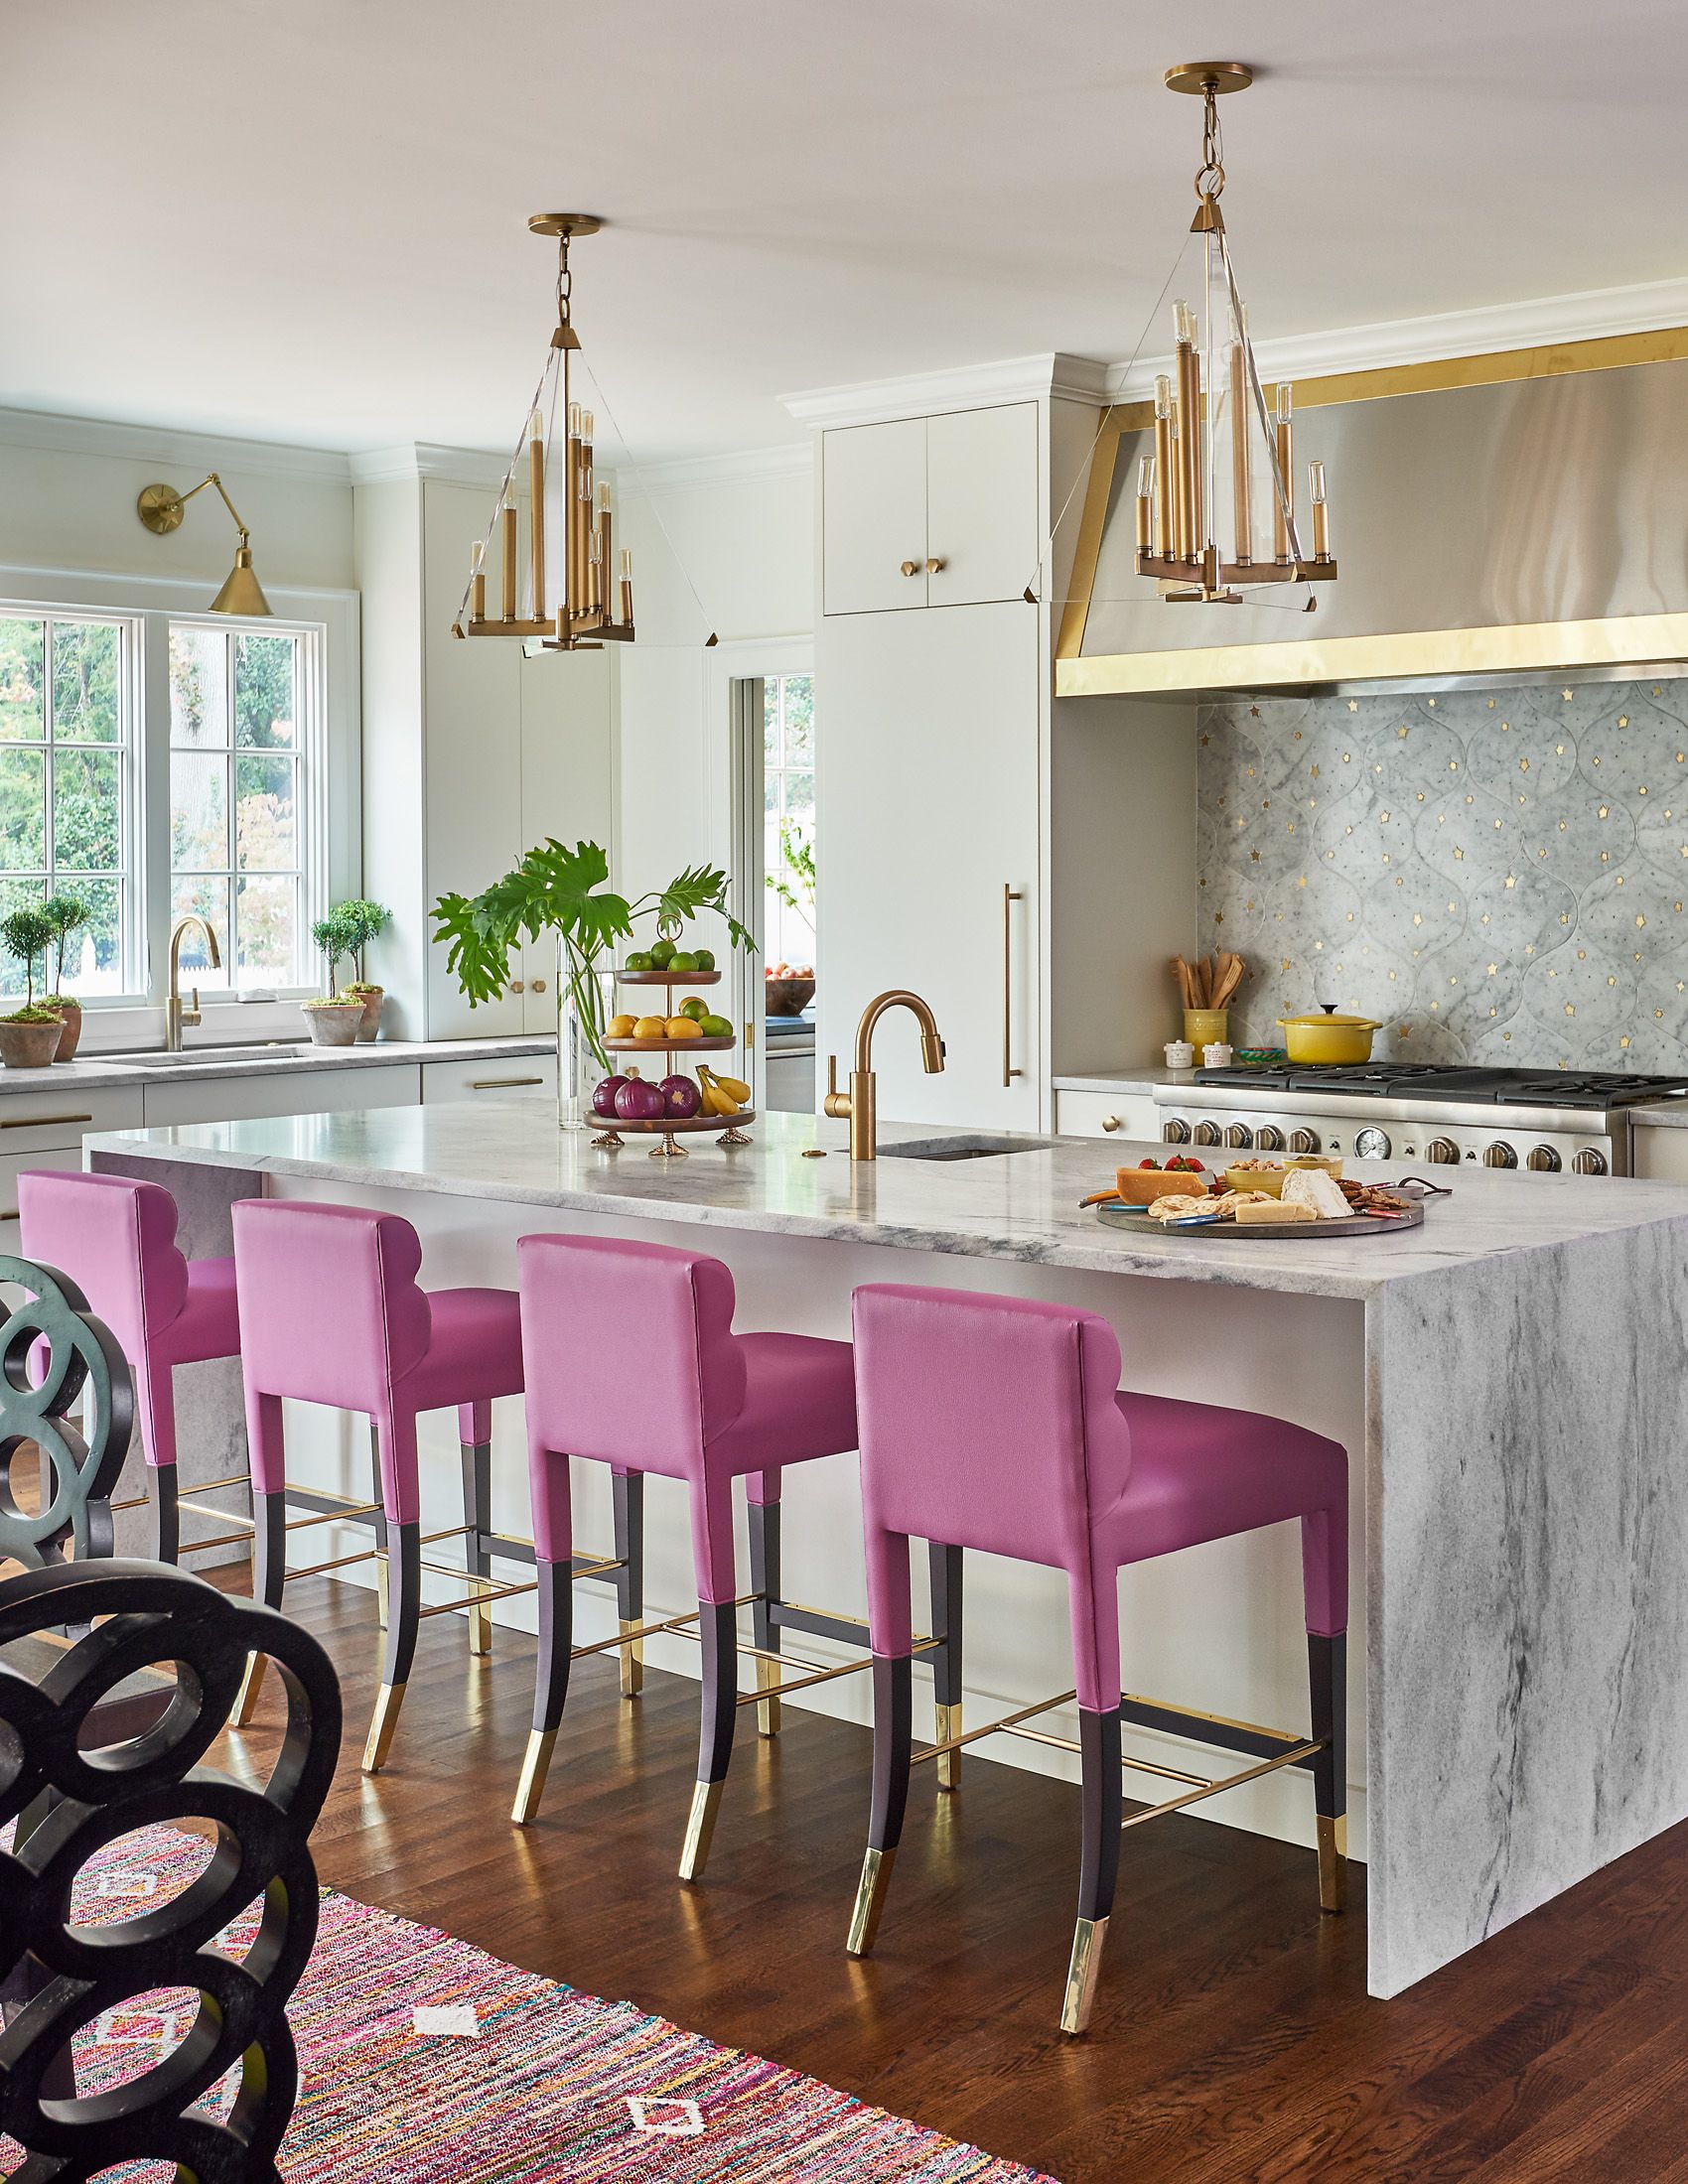 Có rất nhiều tông màu hồng khác nhau nên bạn có thể tha hồ sáng tạo khi áp dụng cho phòng bếp. Chủ nhân đã lựa chọn trắng - vàng đồng và hồng tím để tạo nên sự quyến rũ táo bạo cho khu vực nấu nước của mình.